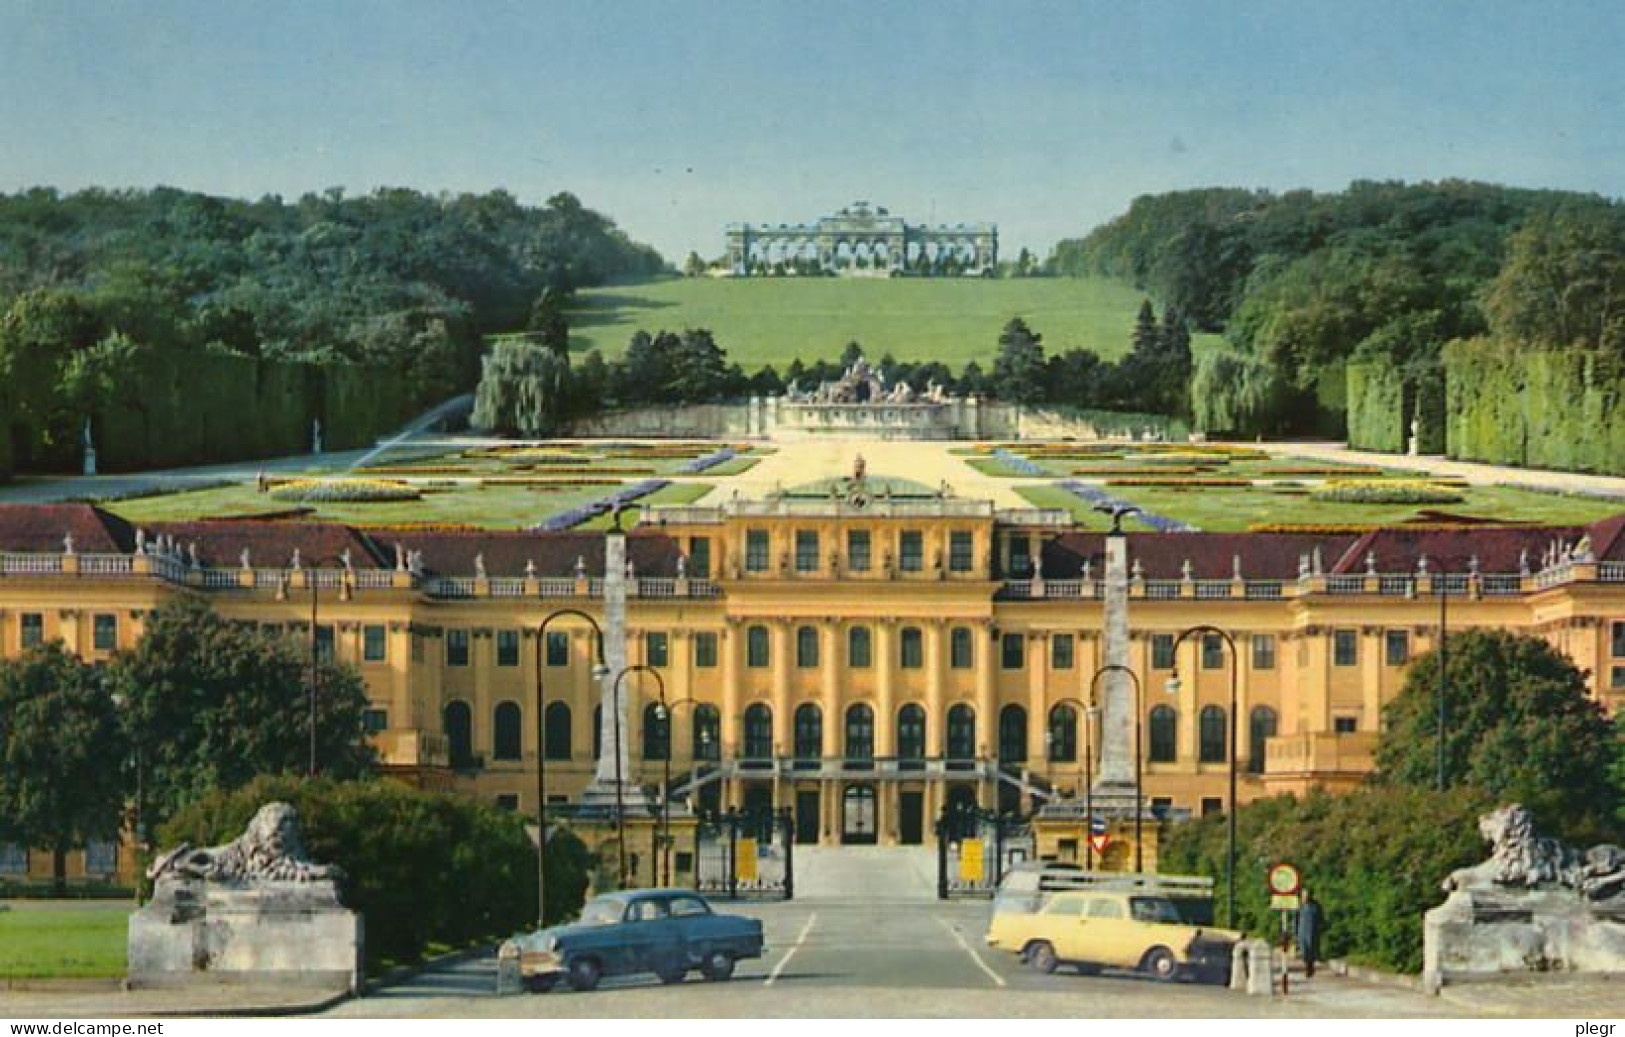 0-AUT08 02 02 - WIEN / VIENNE - SCHÖNBRUNN - SCHLOSS UND GLORIETTE - Schönbrunn Palace